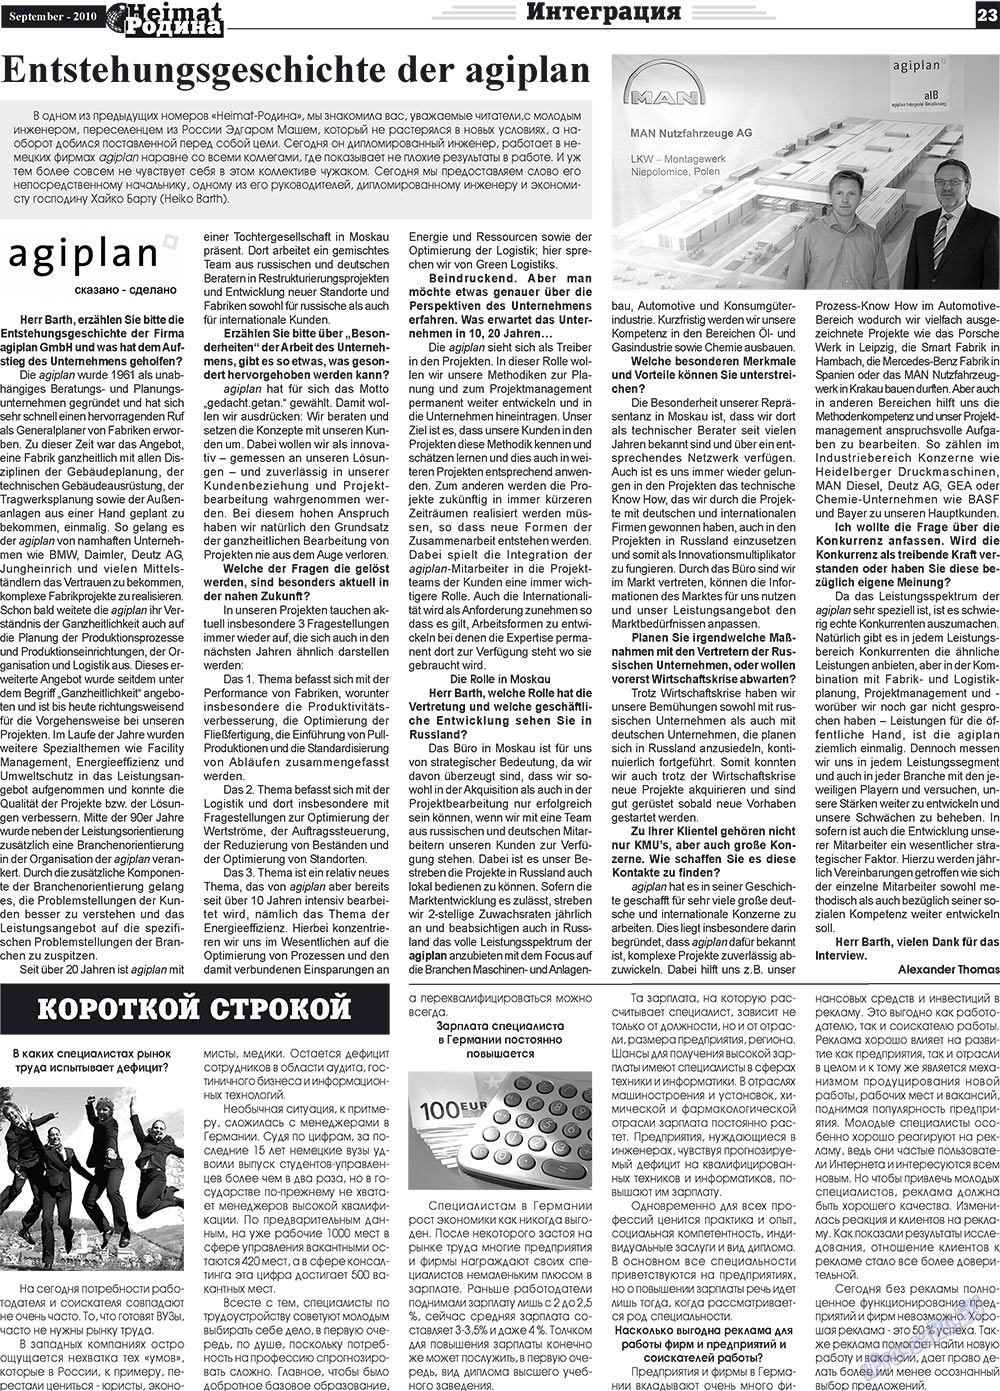 Heimat-Родина (газета). 2010 год, номер 9, стр. 23